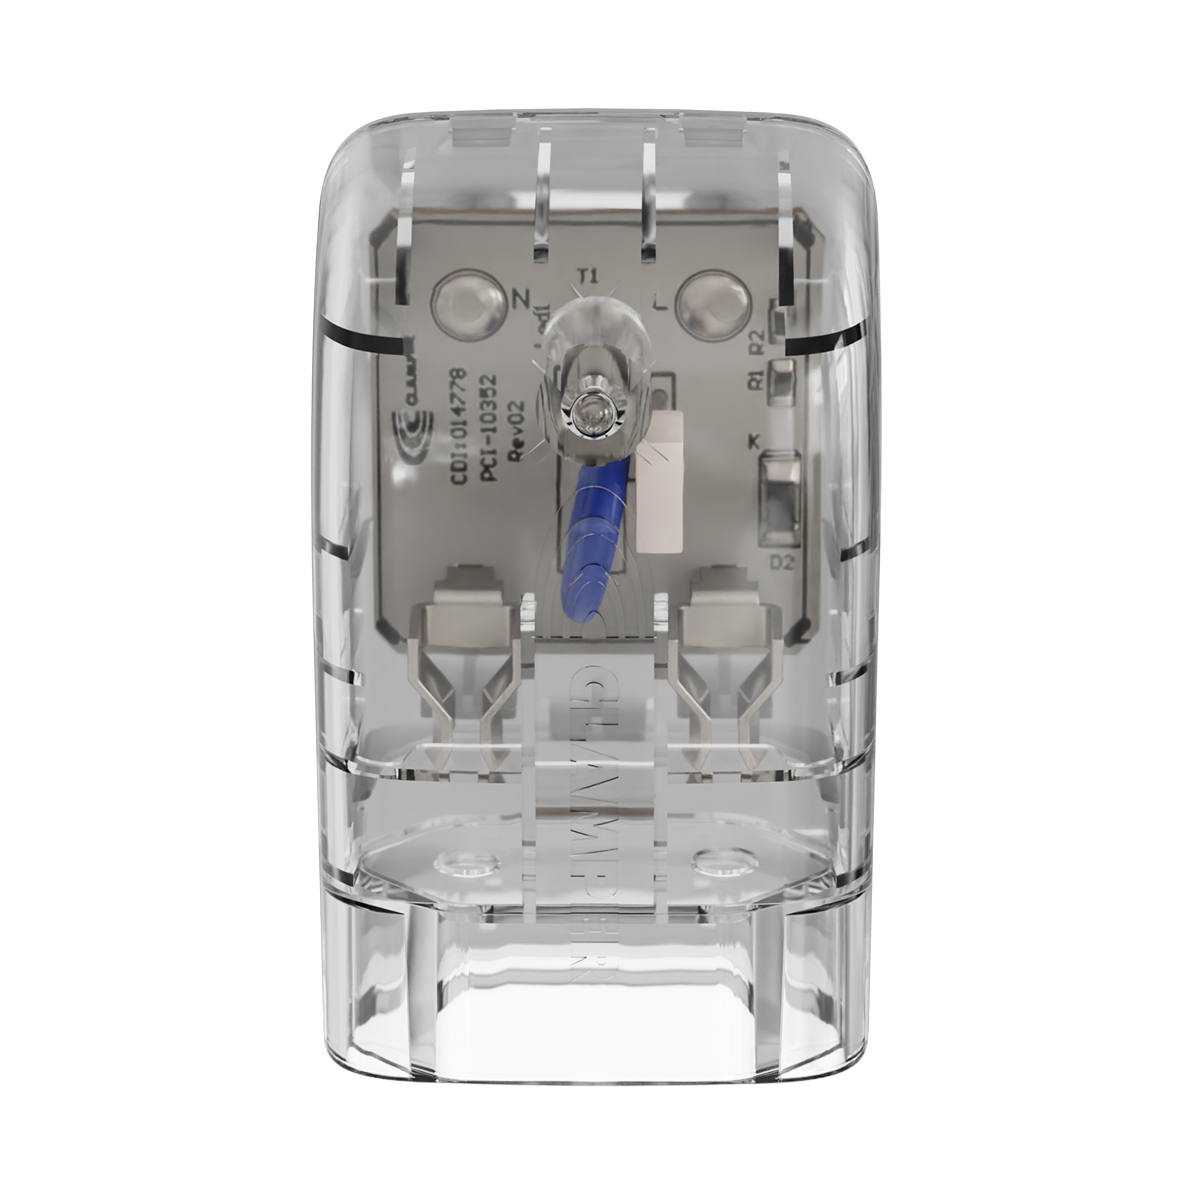 iClamper Pocket Fit 2 Pinos 10A DPS Proteção contra Raios e Surtos Elétricos Mesmo Sem Aterramento Clamper Transparente